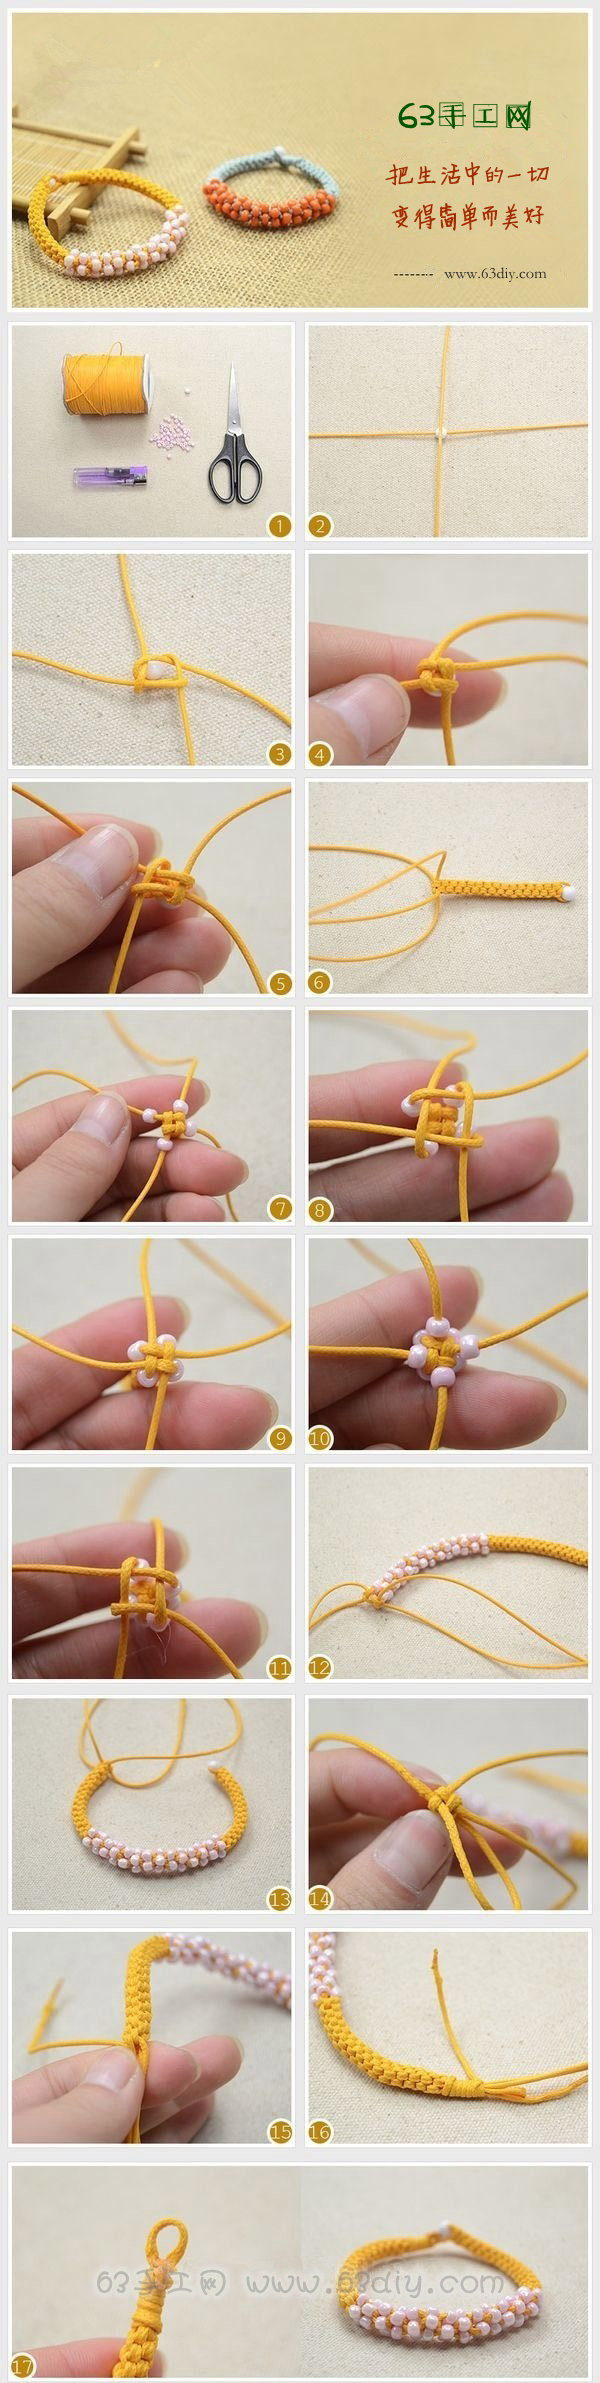 这篇手工编织课跟大家分享的是一款圆柱形手工手串手绳的编织教程,手